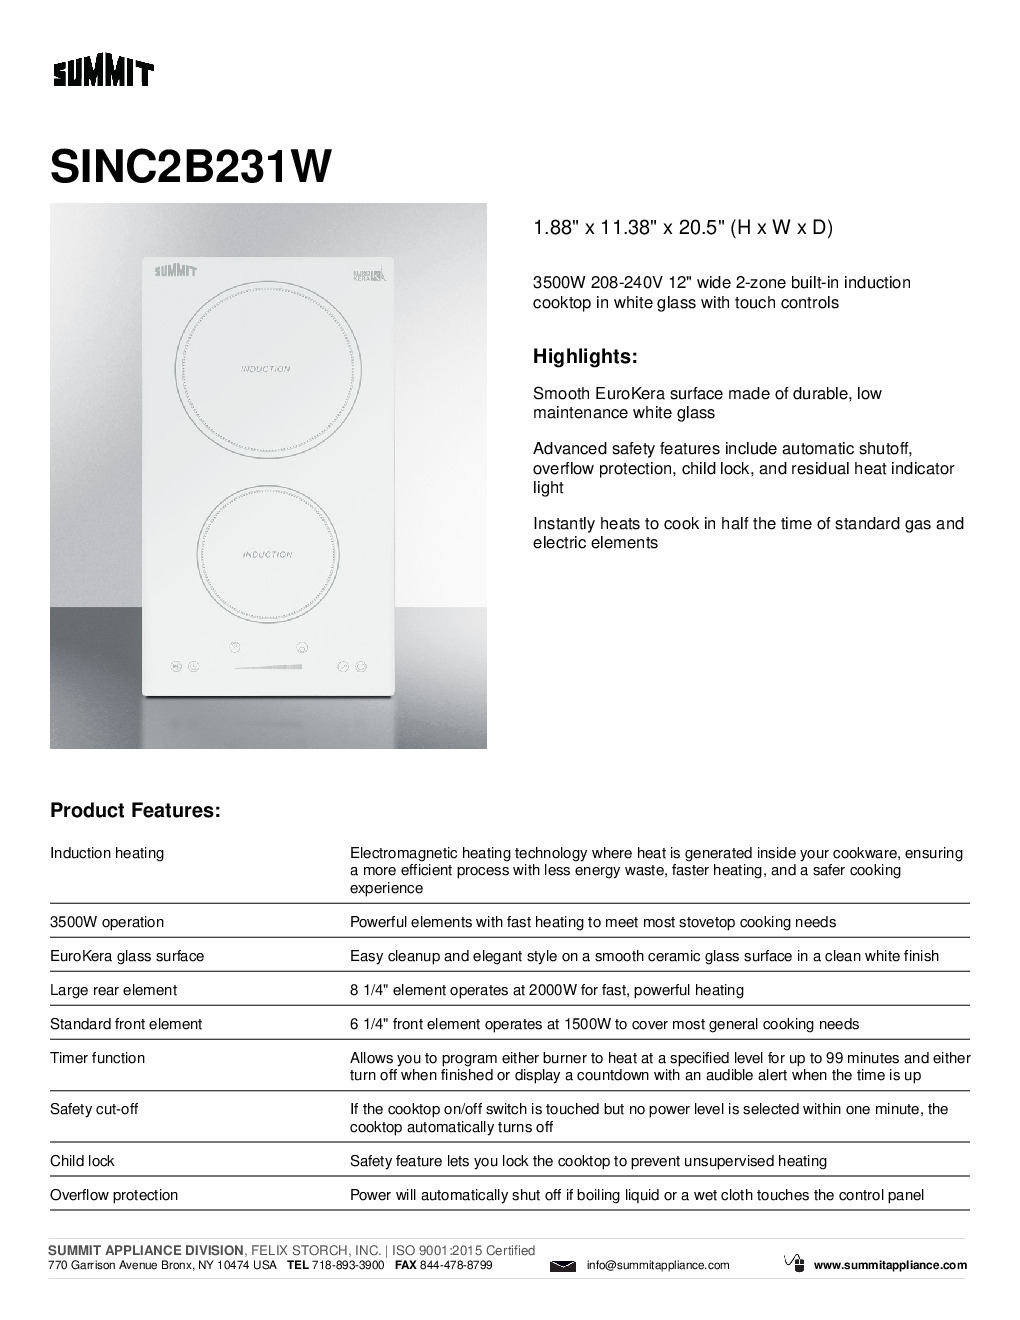 Summit SINC2B231W Built-In / Drop-In Induction Range